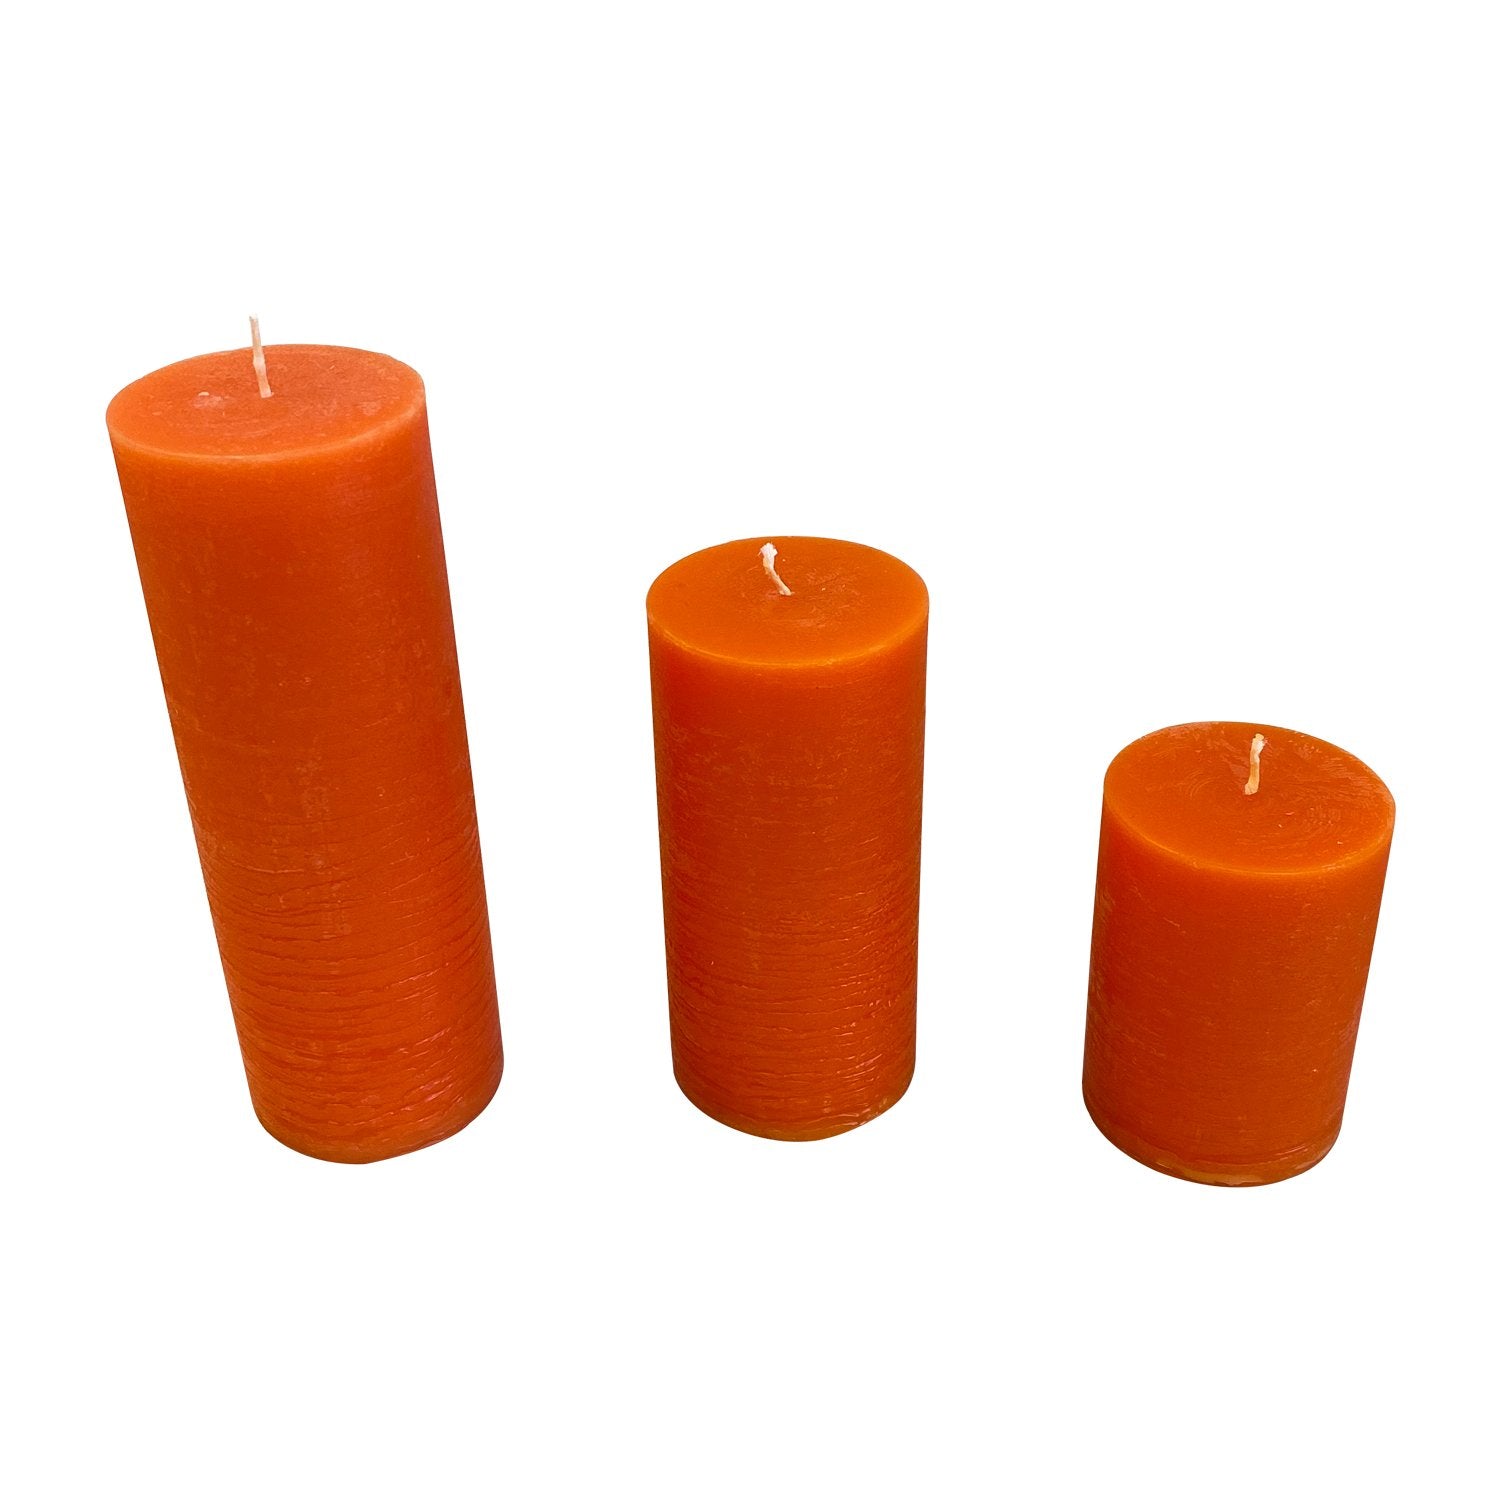 Blok lys - Orange (6cm i diameter)